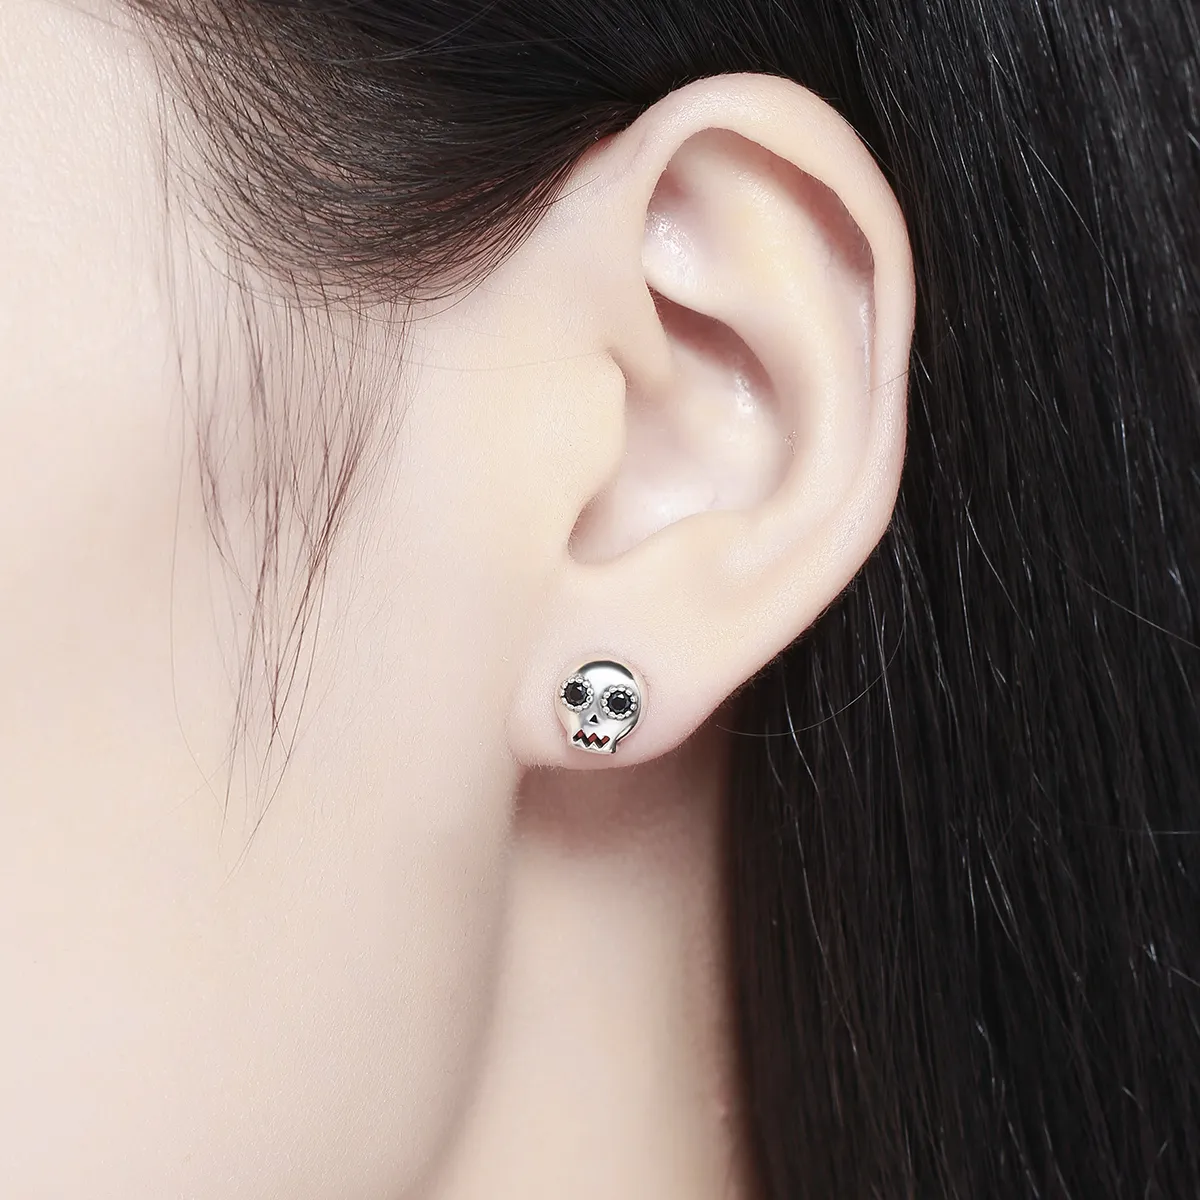 Pandora Style Silver Skull Stud Earrings - SCE064